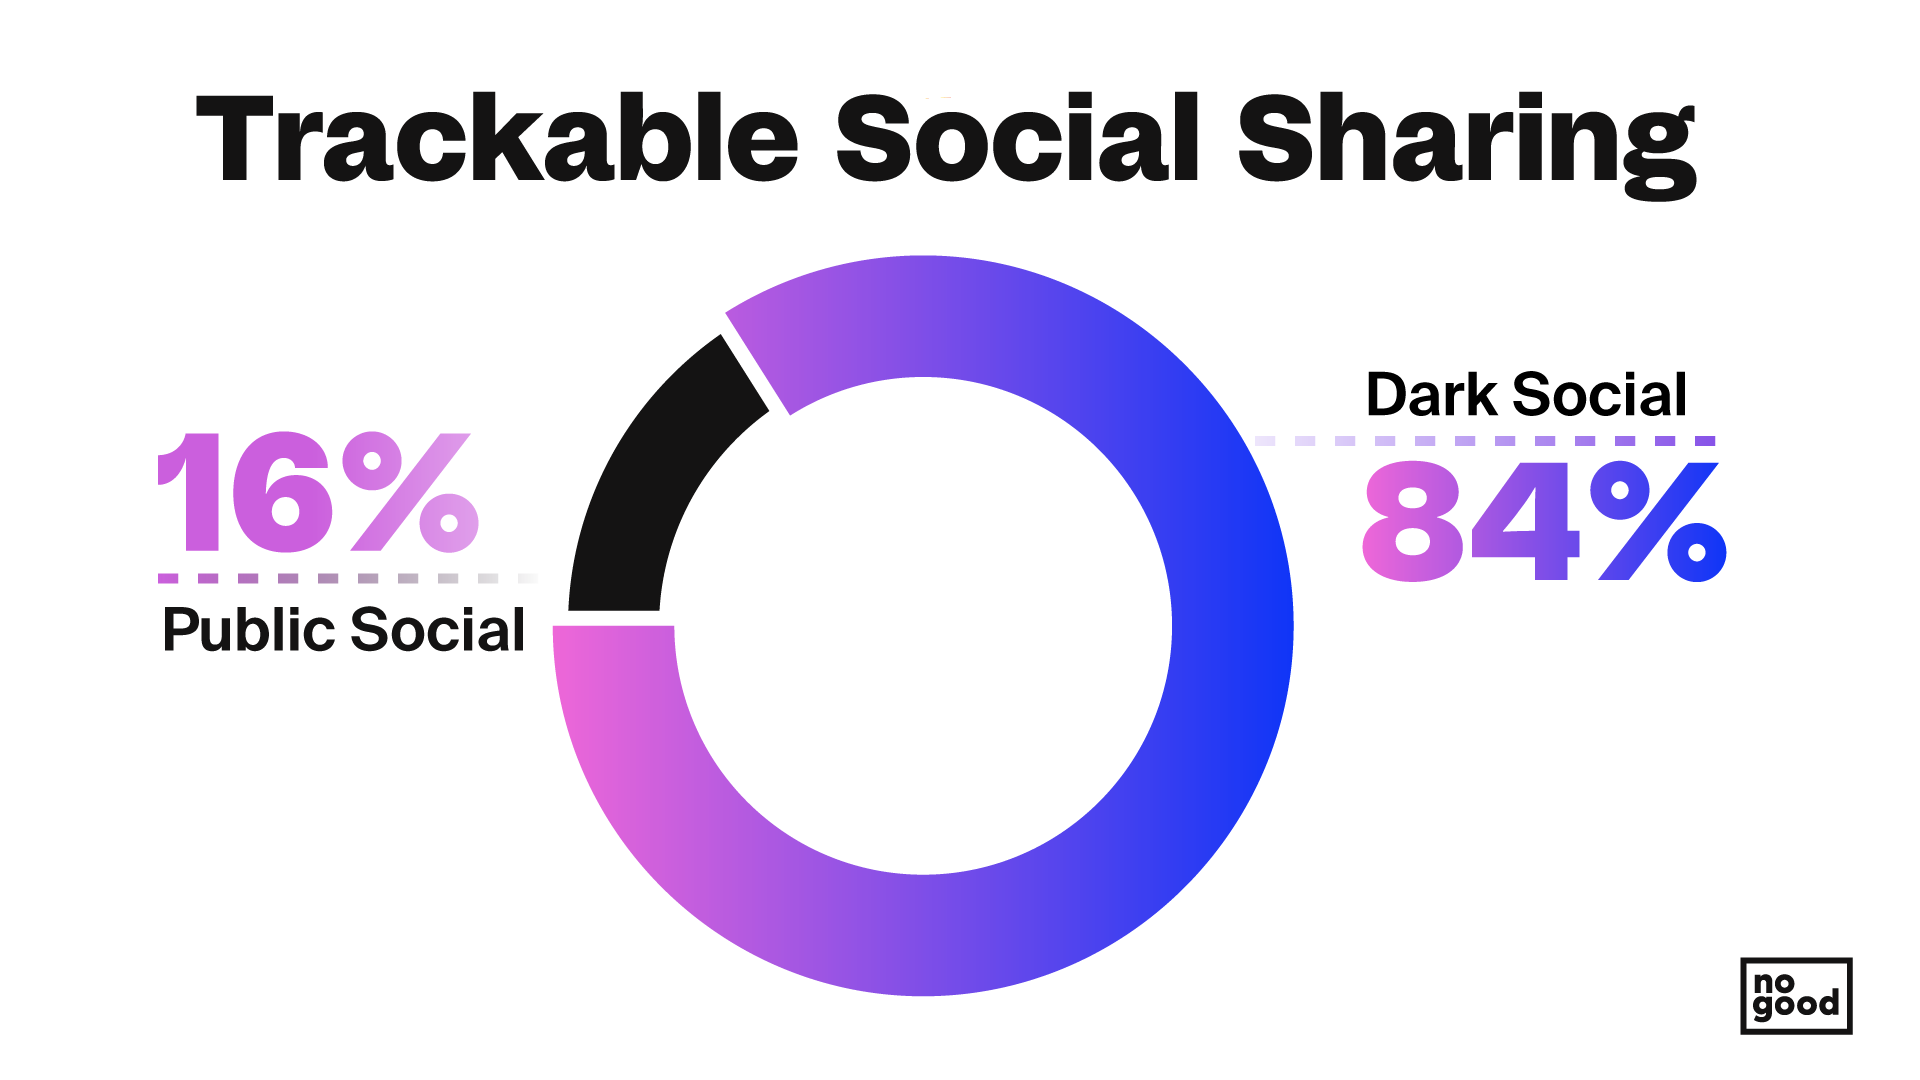 Donut chart of percentages for dark social vs public social sharing